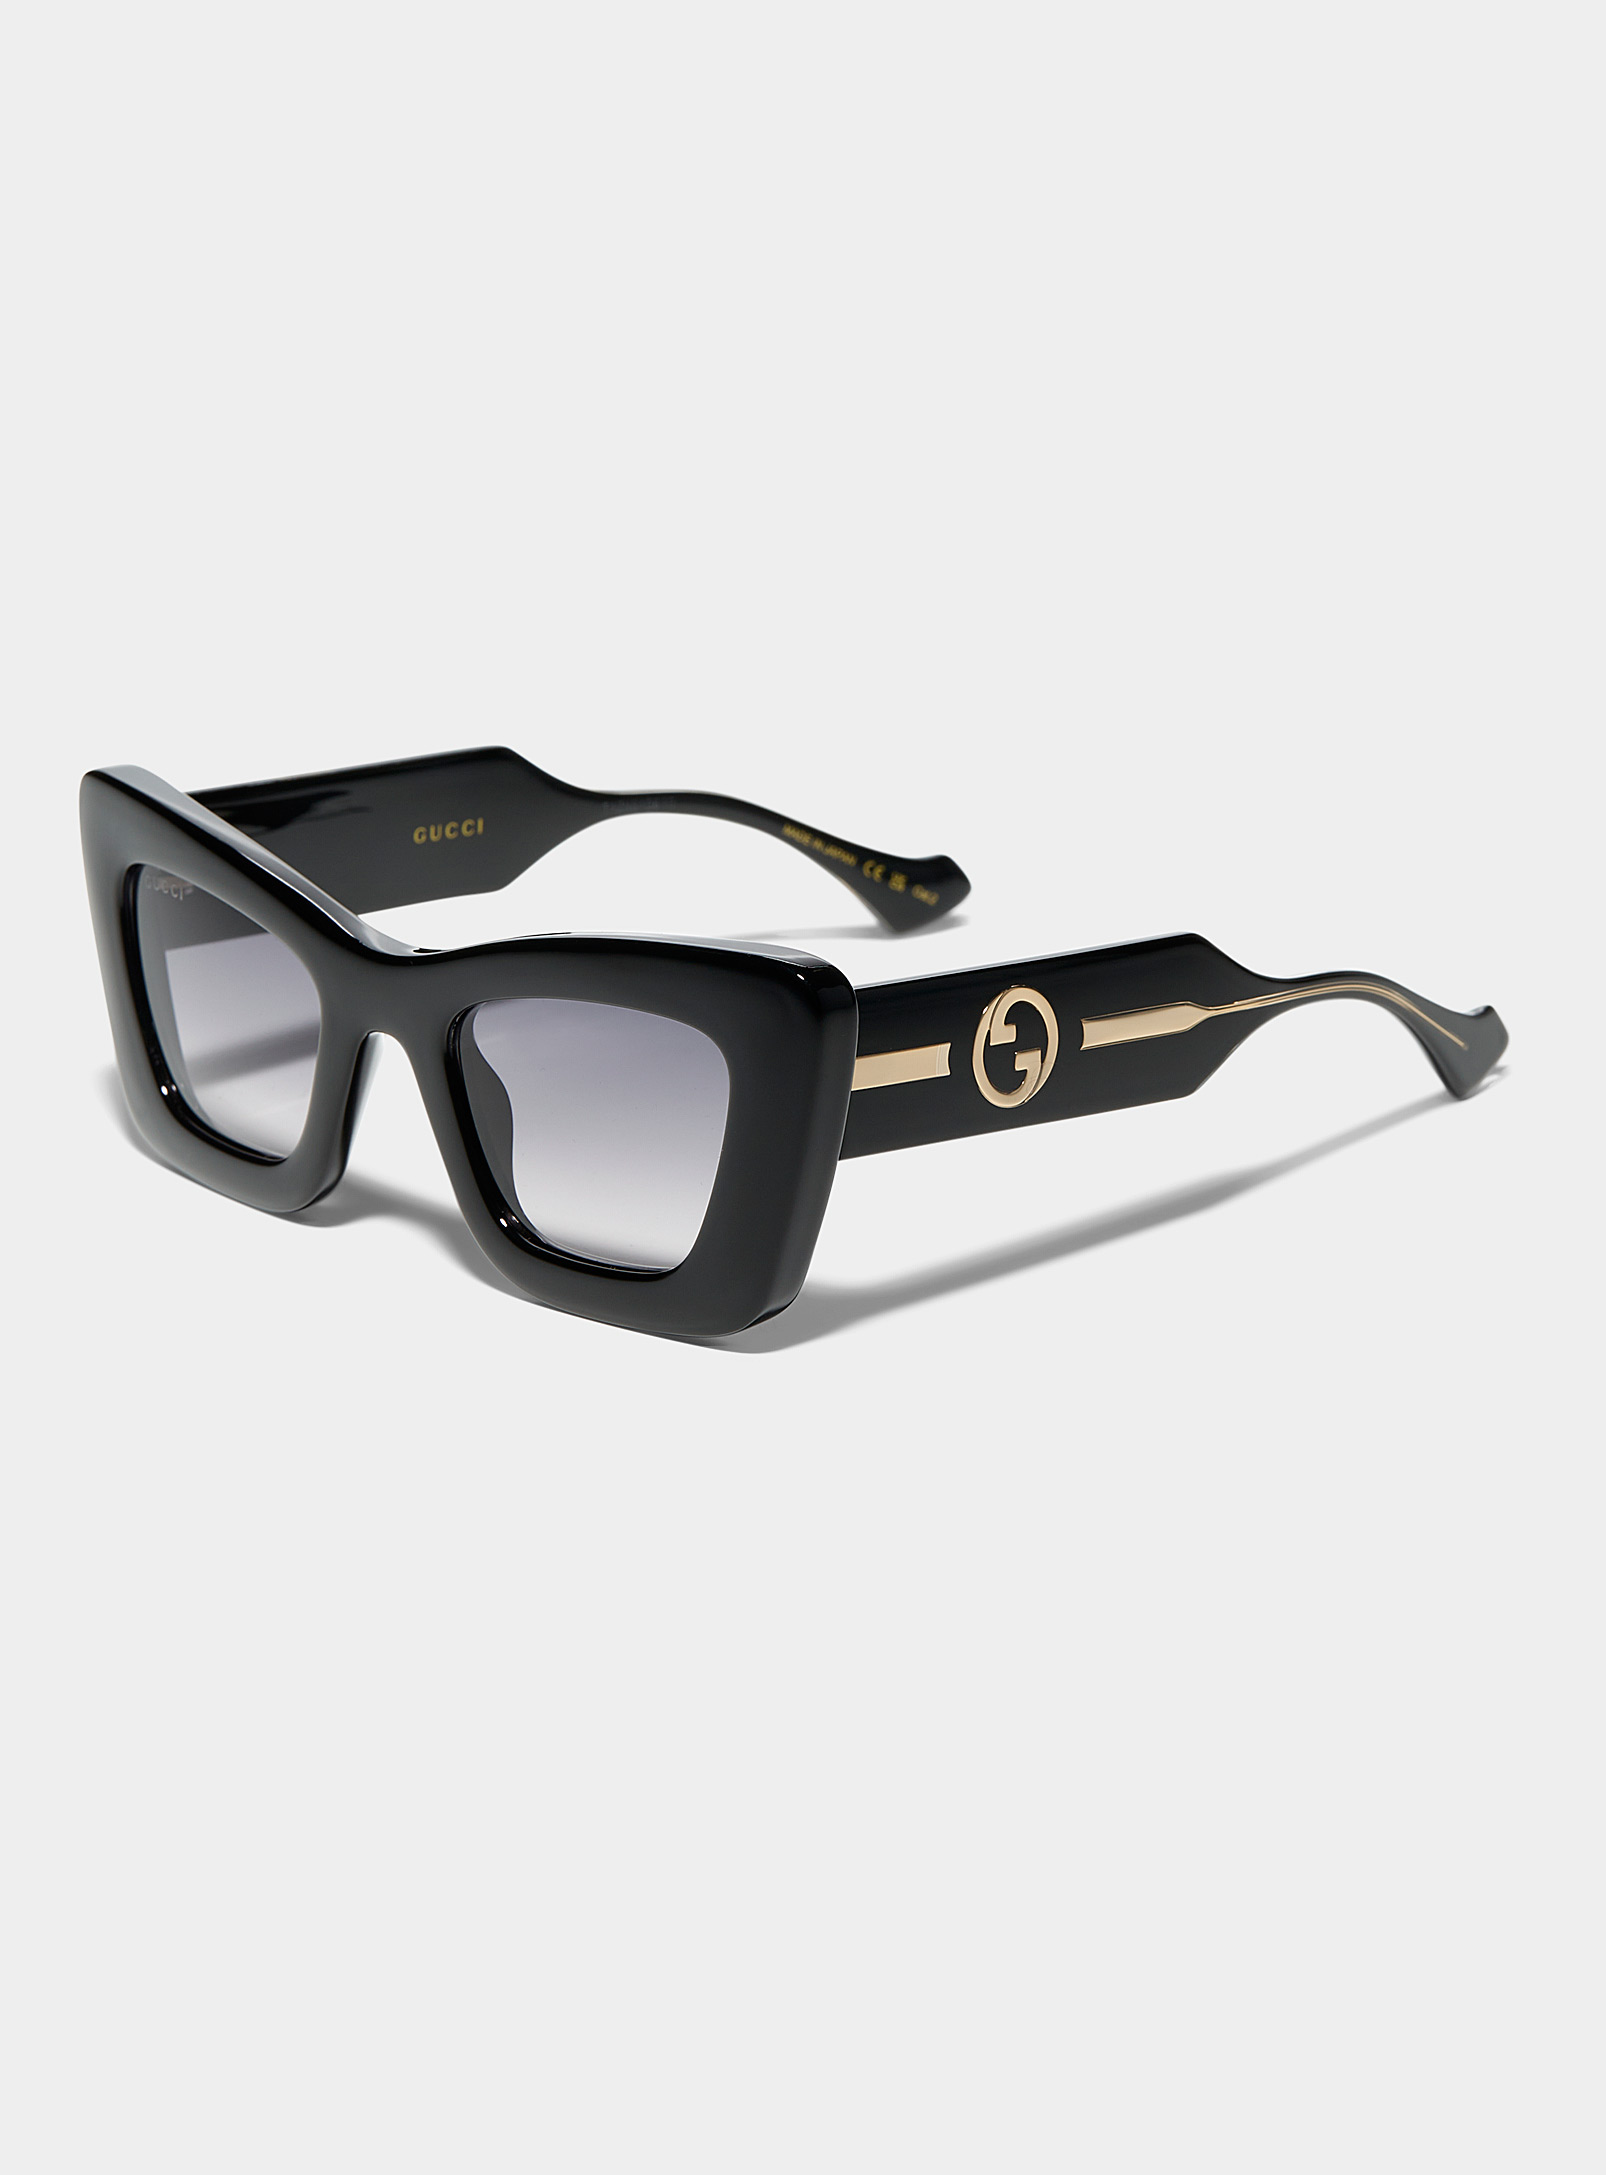 Gucci - Les lunettes de soleil oeil de chat massives